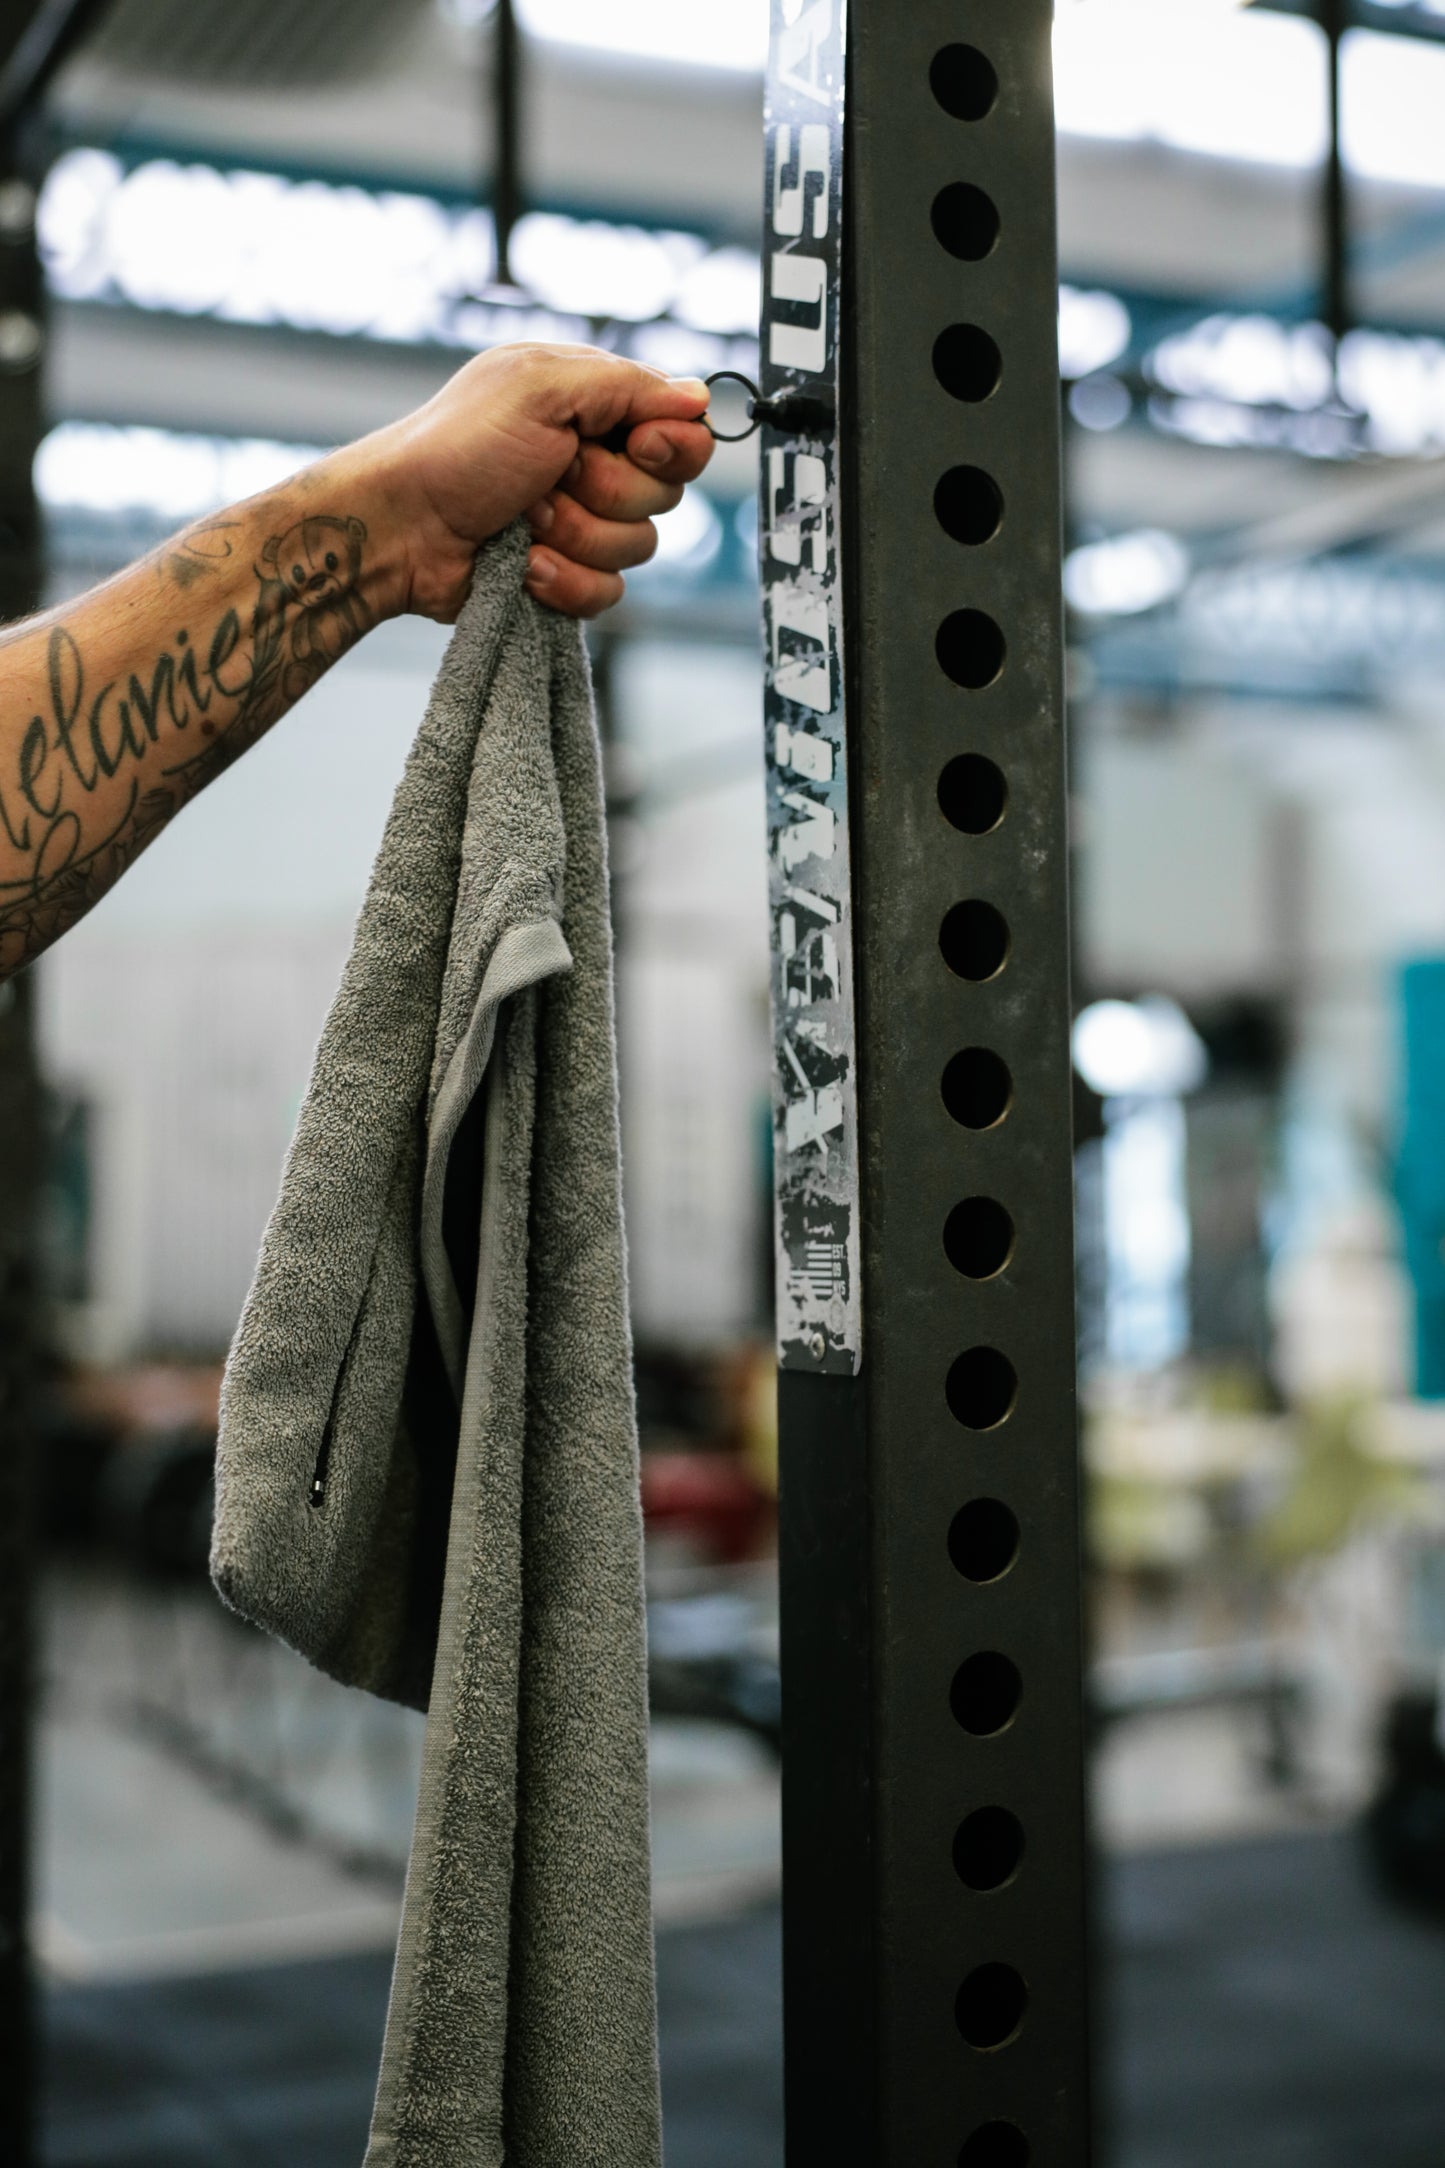 Gym Towel + Hanging Mangnet